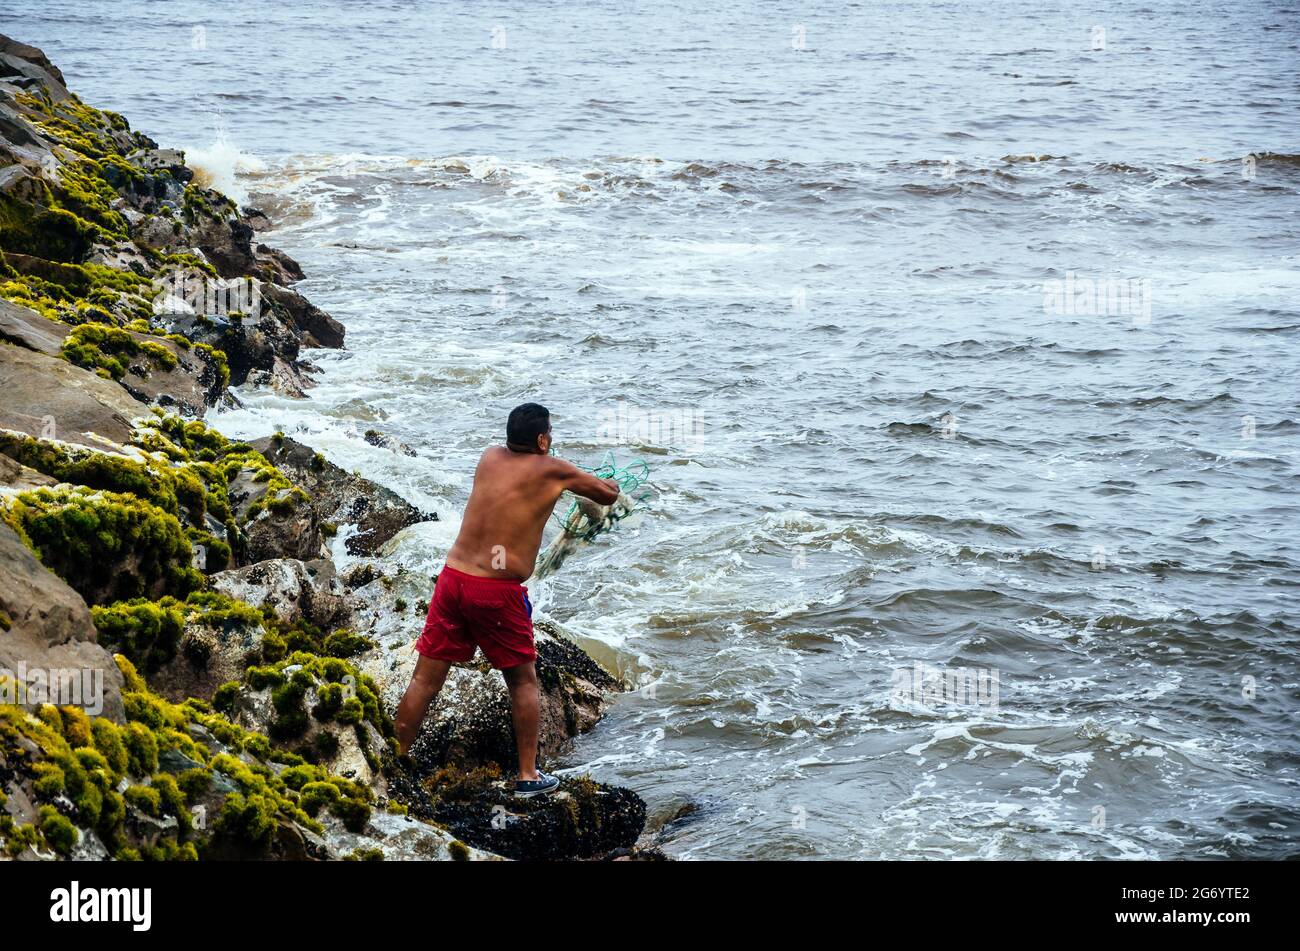 Fisherman pulling fishing net on the beaches of Lima, Peru. Stock Photo